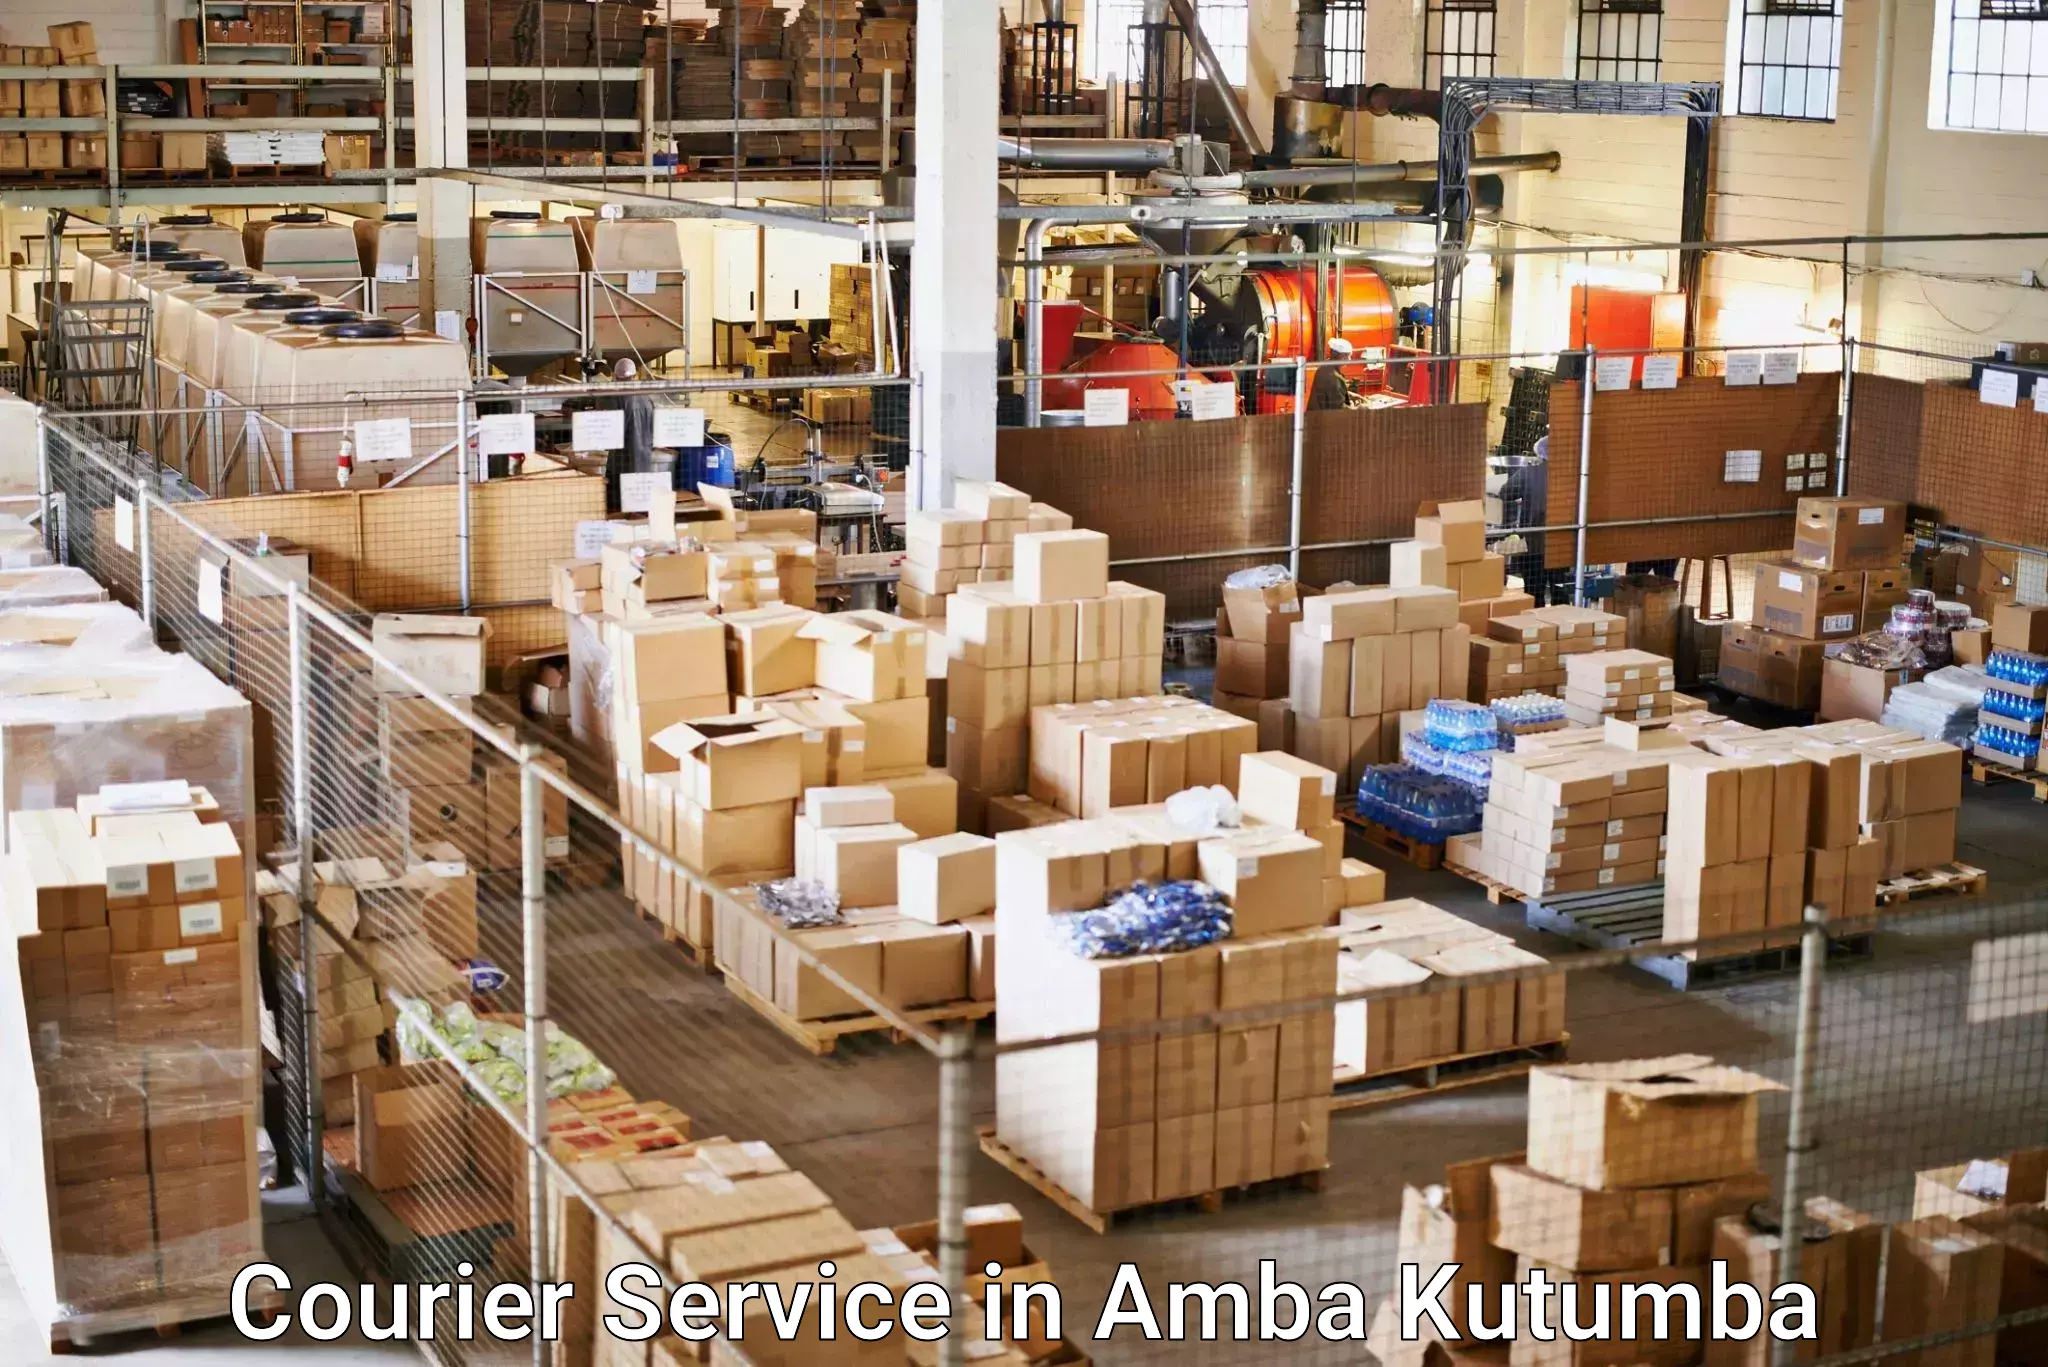 High-capacity shipping options in Amba Kutumba